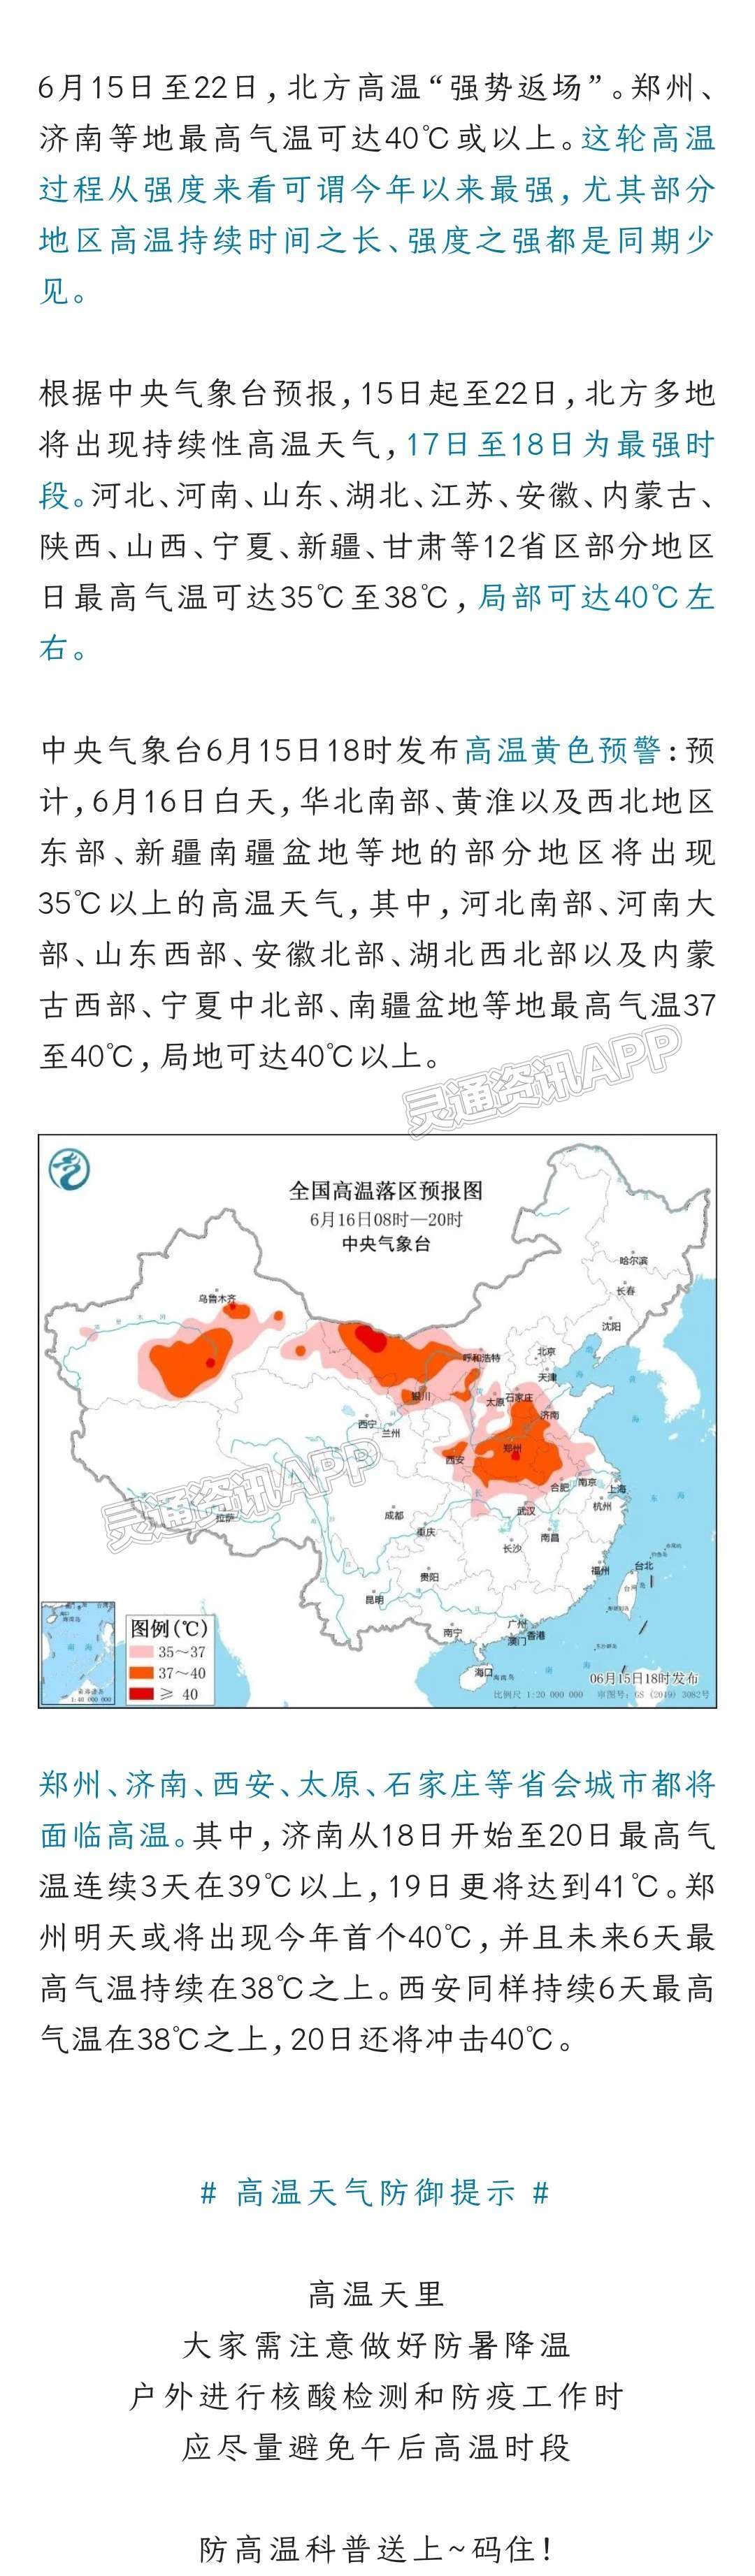 雷火·竞技(中国)-电竞网站雷火电竞首页-今年以来最强高温